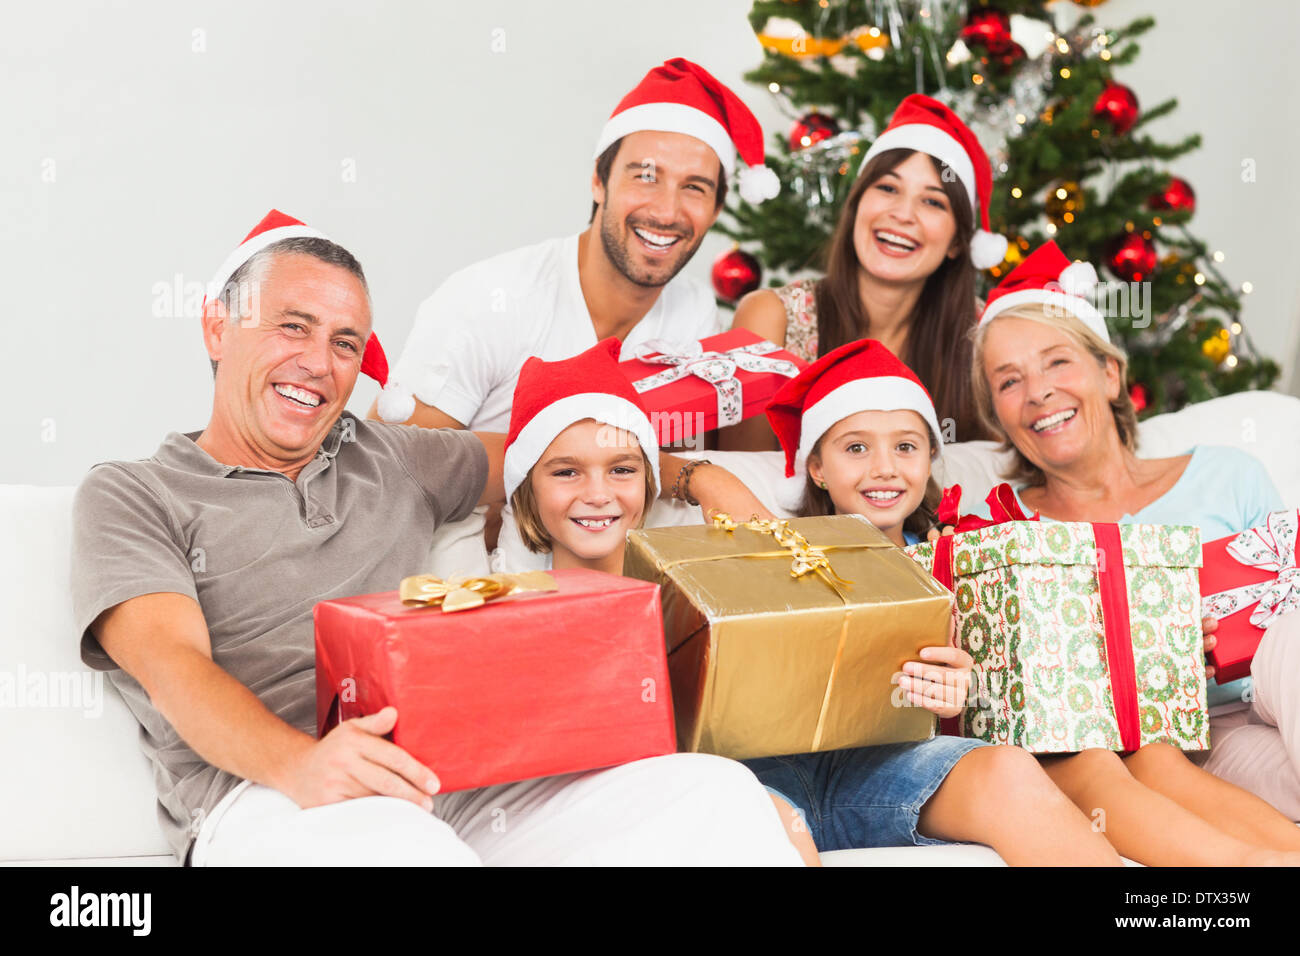 Glückliche Familie zu Weihnachten Geschenke halten Stockfotografie - Alamy